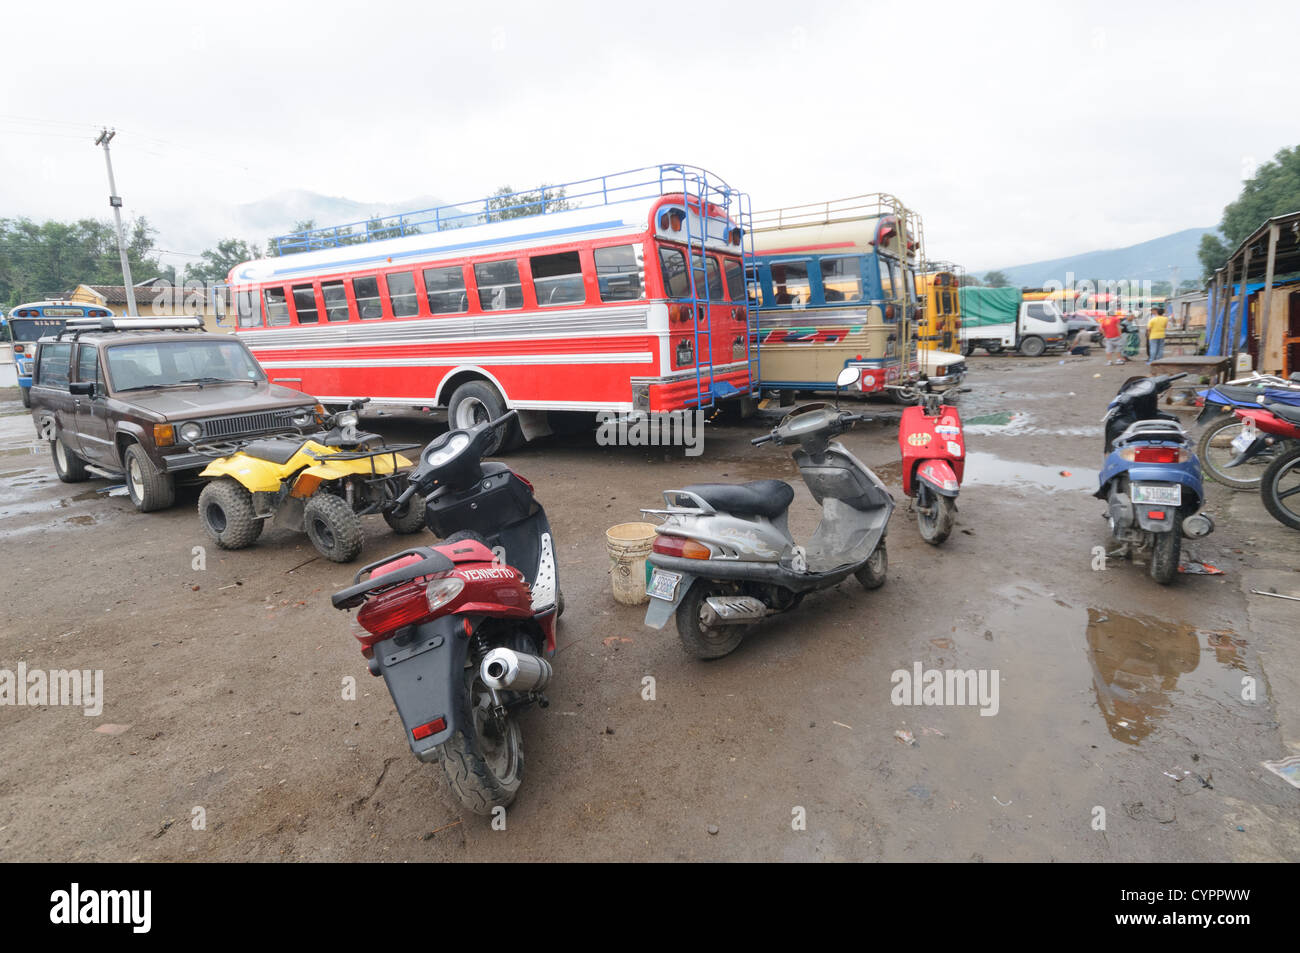 Huhn Busse und Motorroller hinter dem Mercado Municipal (Stadtmarkt) in Antigua, Guatemala. Aus diesem umfangreichen zentralen Busbahnhof strahlenförmig der Routen in Guatemala. Oft bunt bemalt, die Huhn-Busse sind nachgerüsteten amerikanische Schulbusse und bieten ein günstiges Transportmittel im ganzen Land. Stockfoto